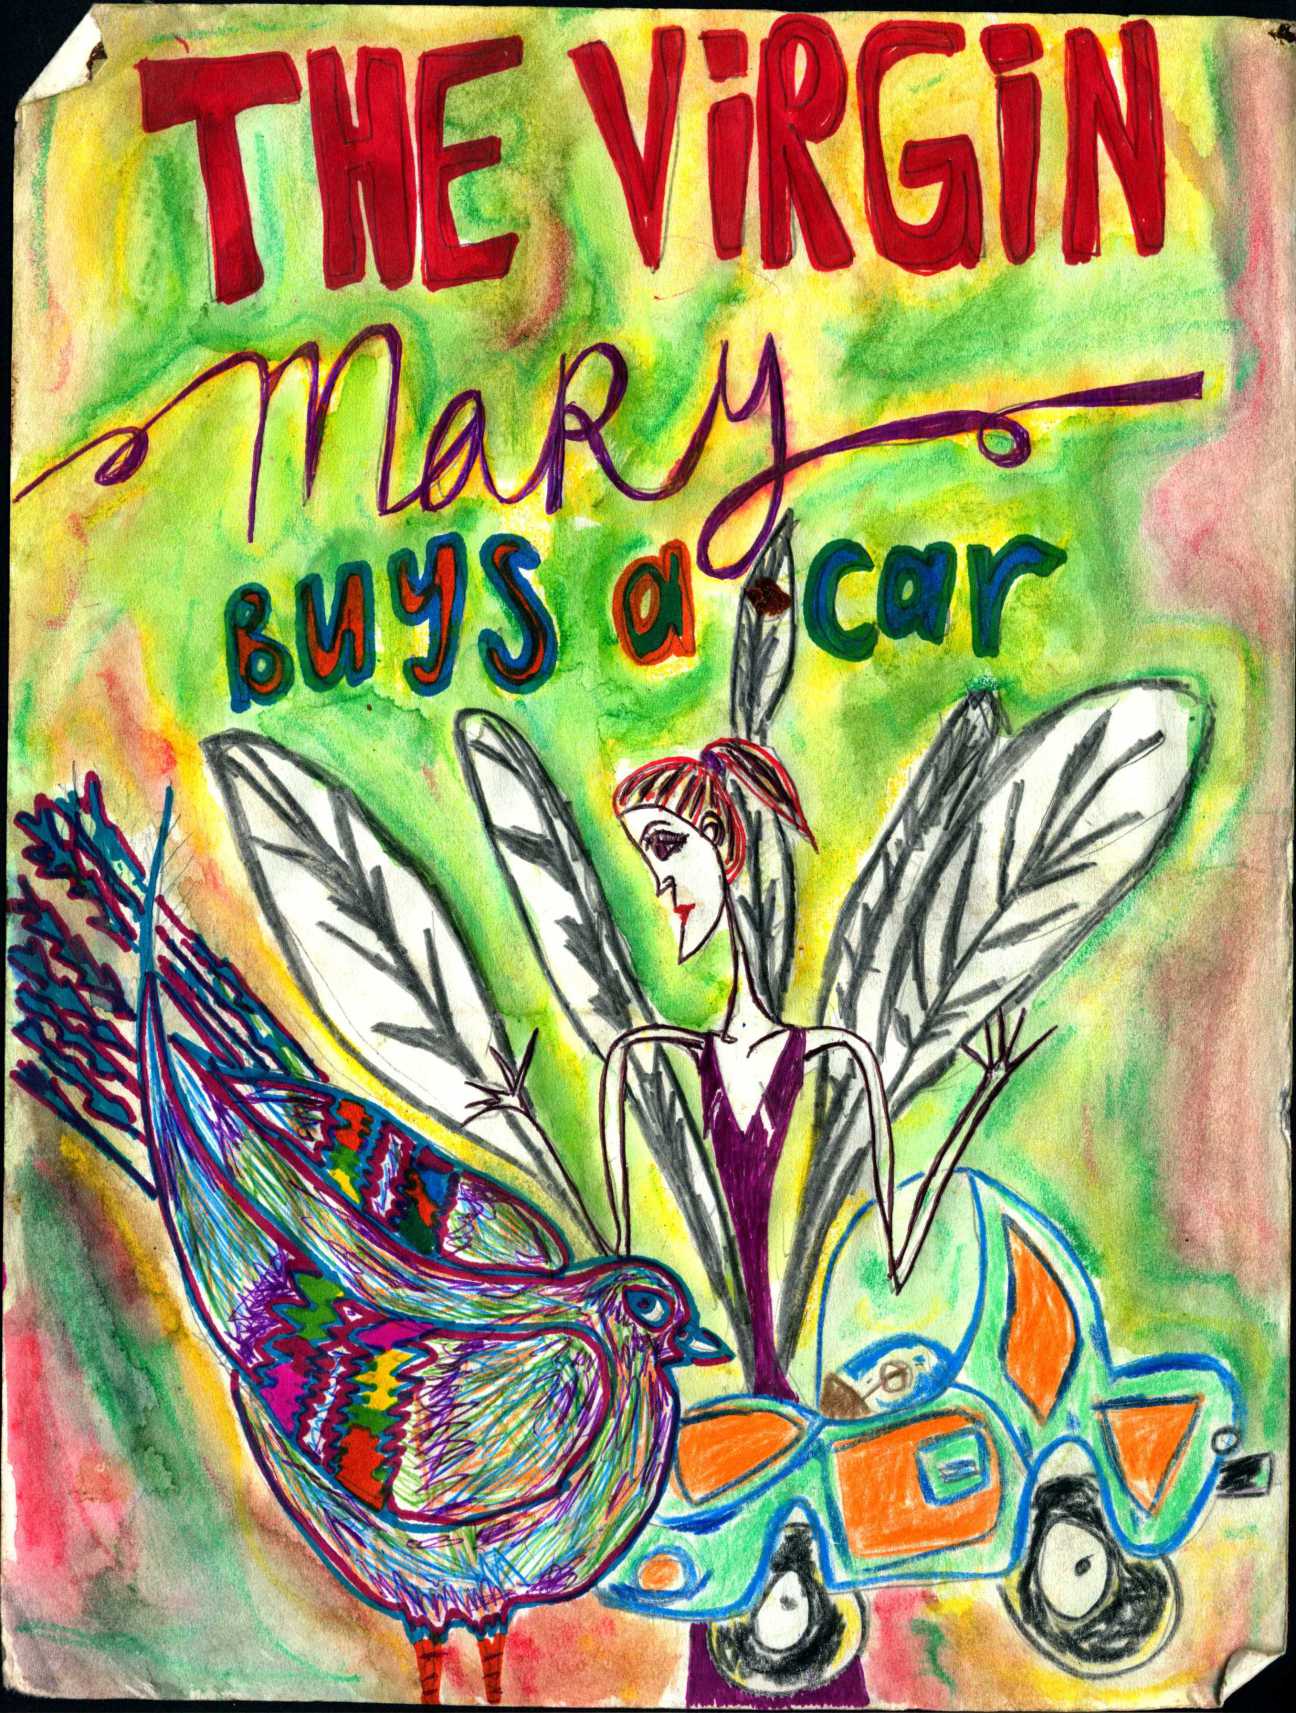 THE VIRGIN MARY BUYS A CAR